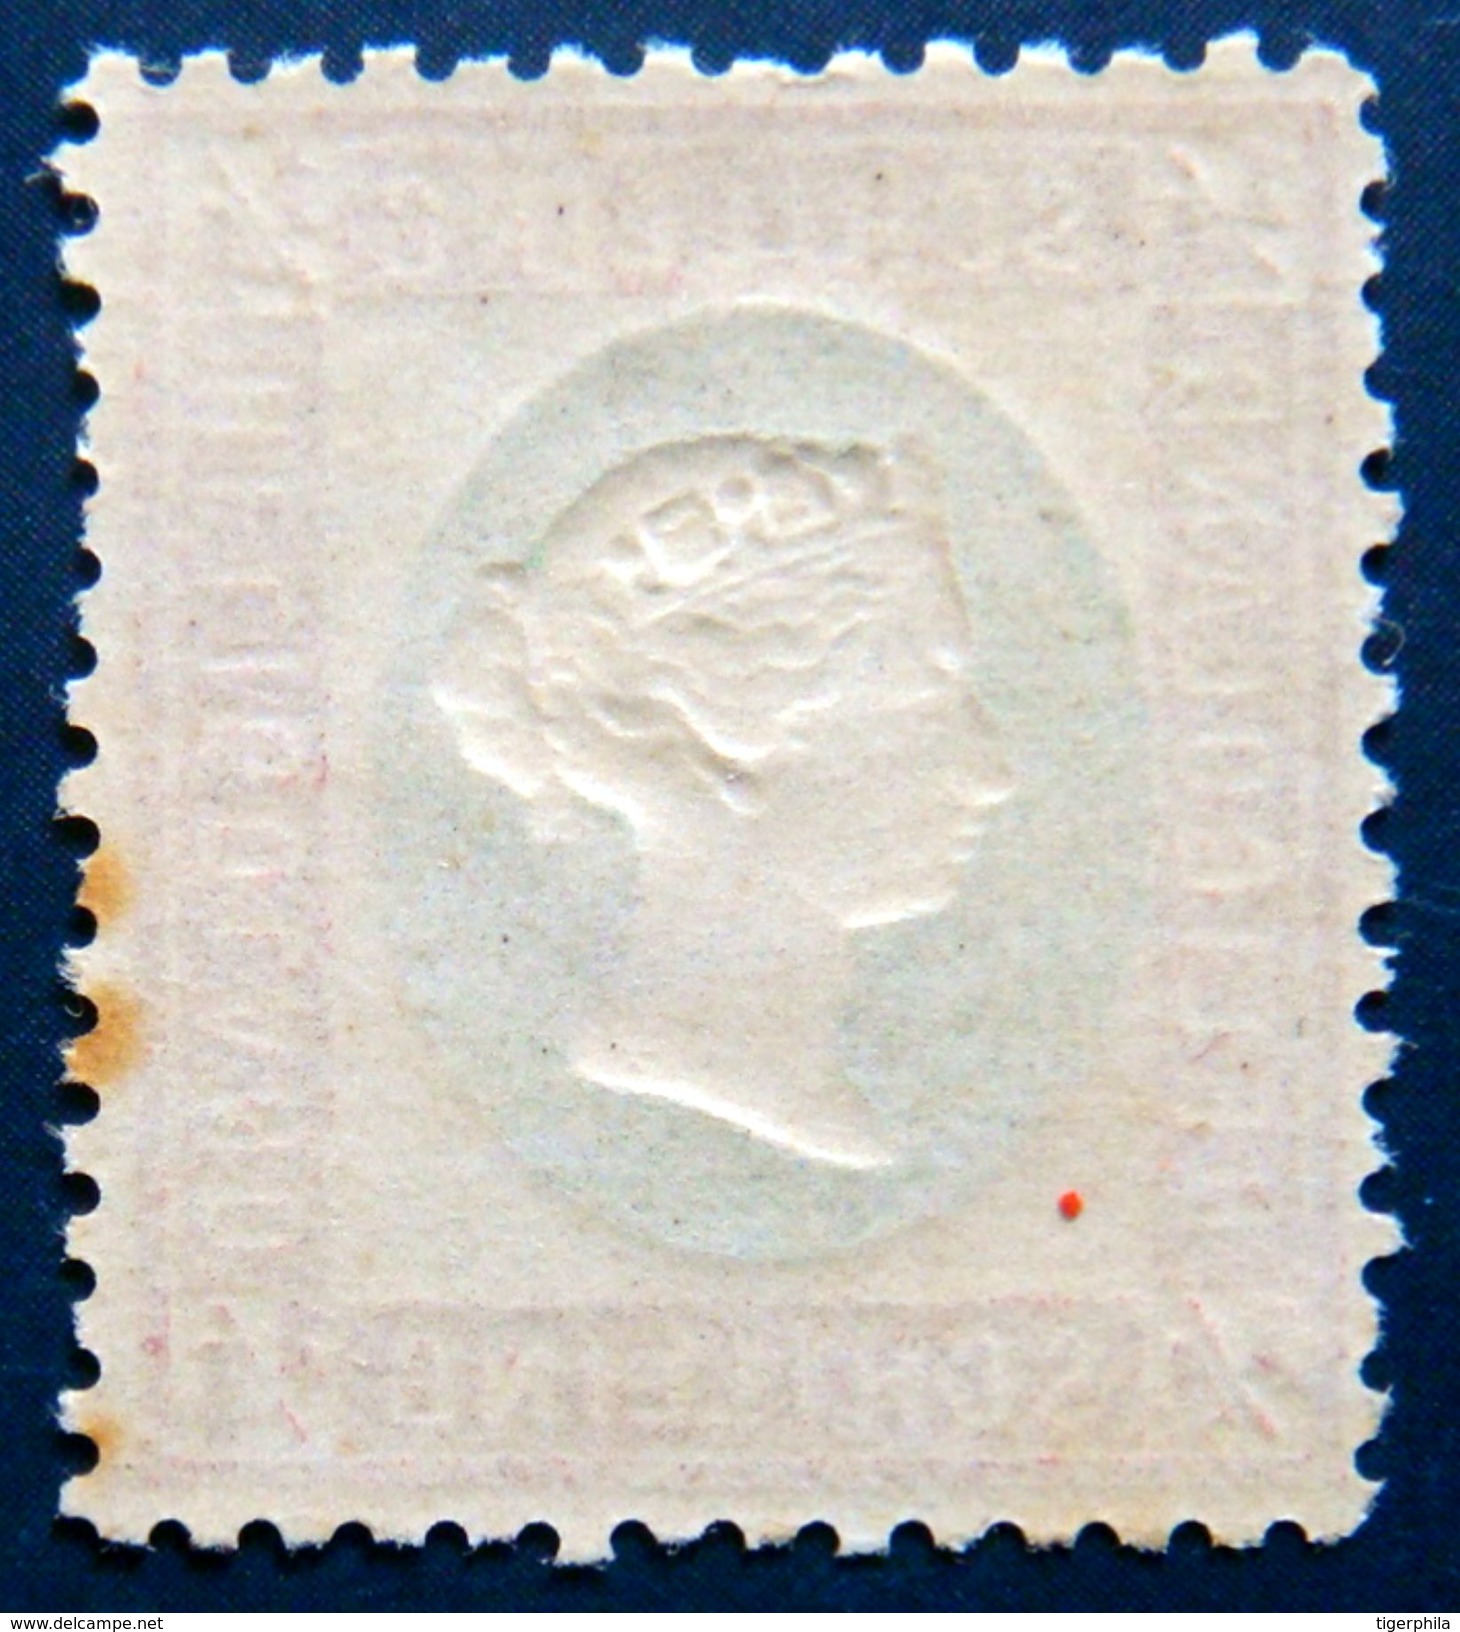 HELIGOLAND 1873 1/4sch Queen Victoria MNH Scott7 CV$32 - Heligoland (1867-1890)